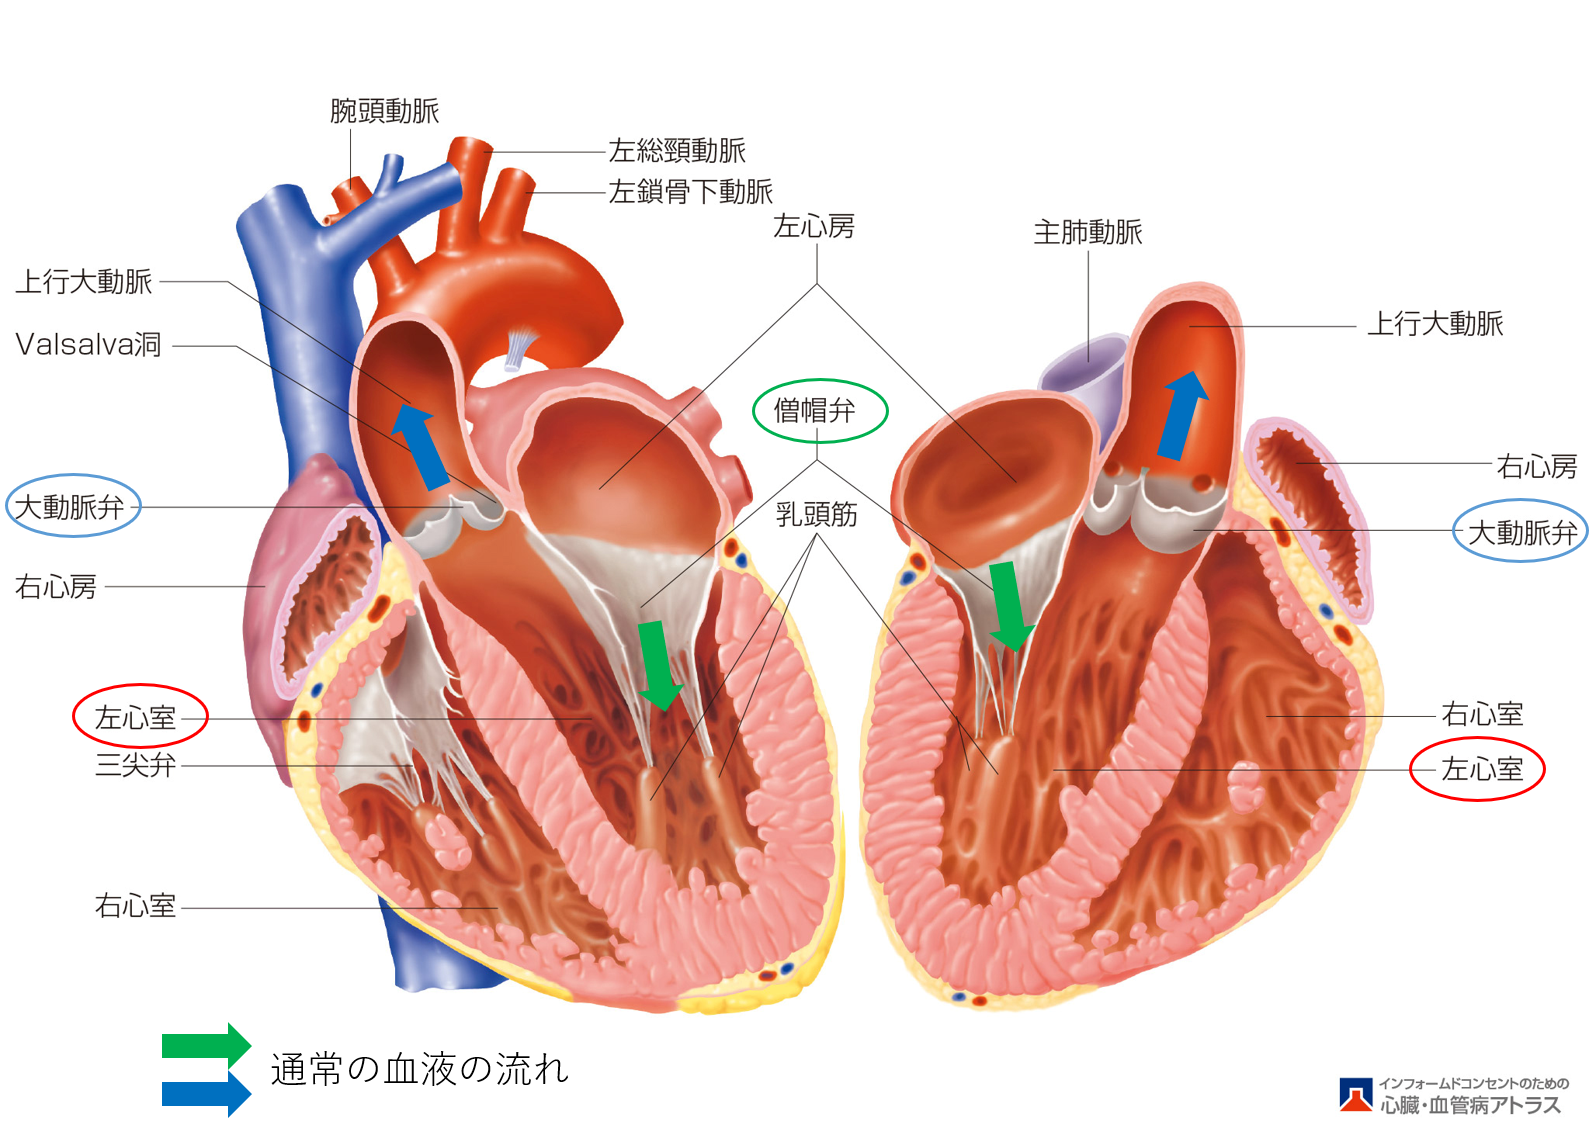 心臓弁膜症についてのわかりやすい説明